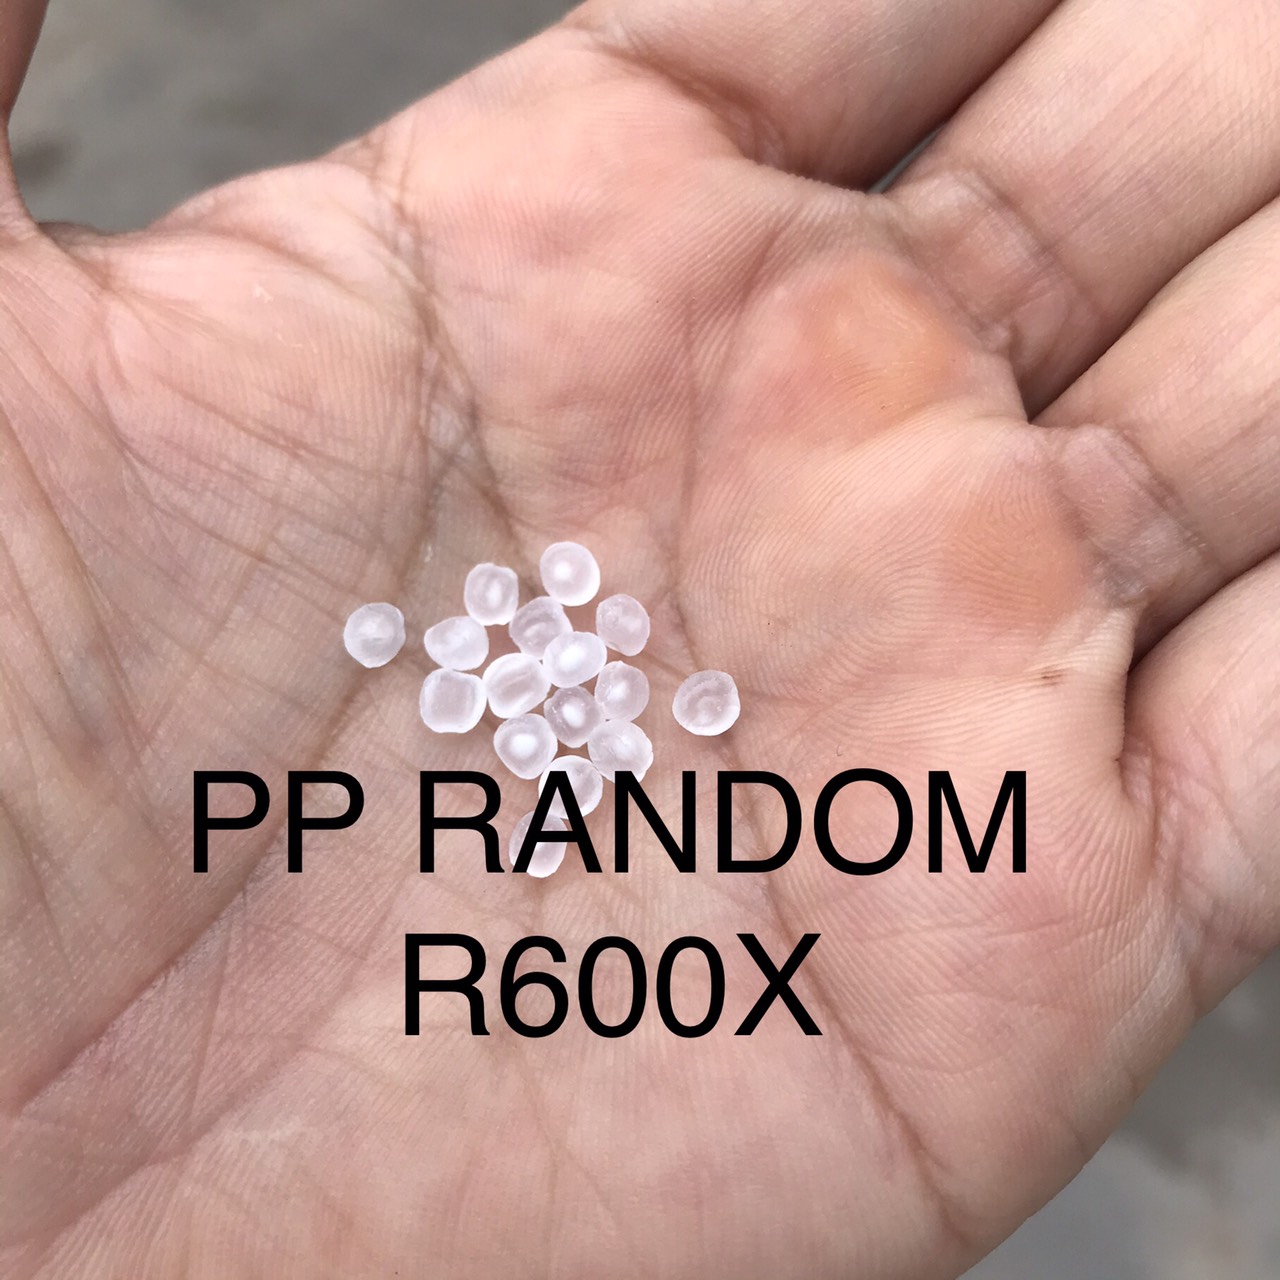 Hạt nhựa nguyên sinh PP R600X